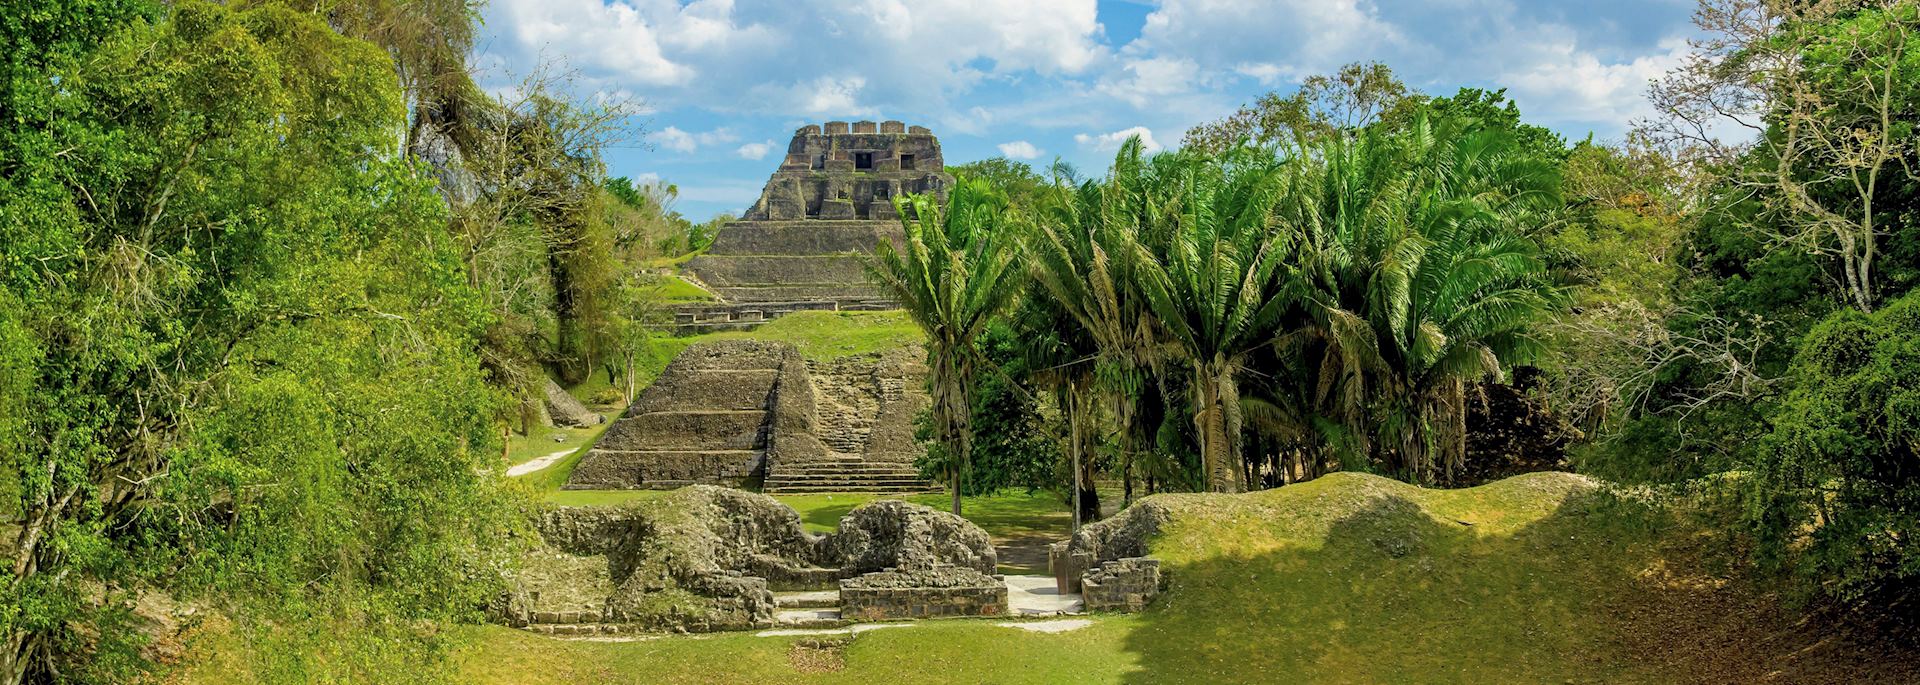 Mayan ruins at Xunantunich